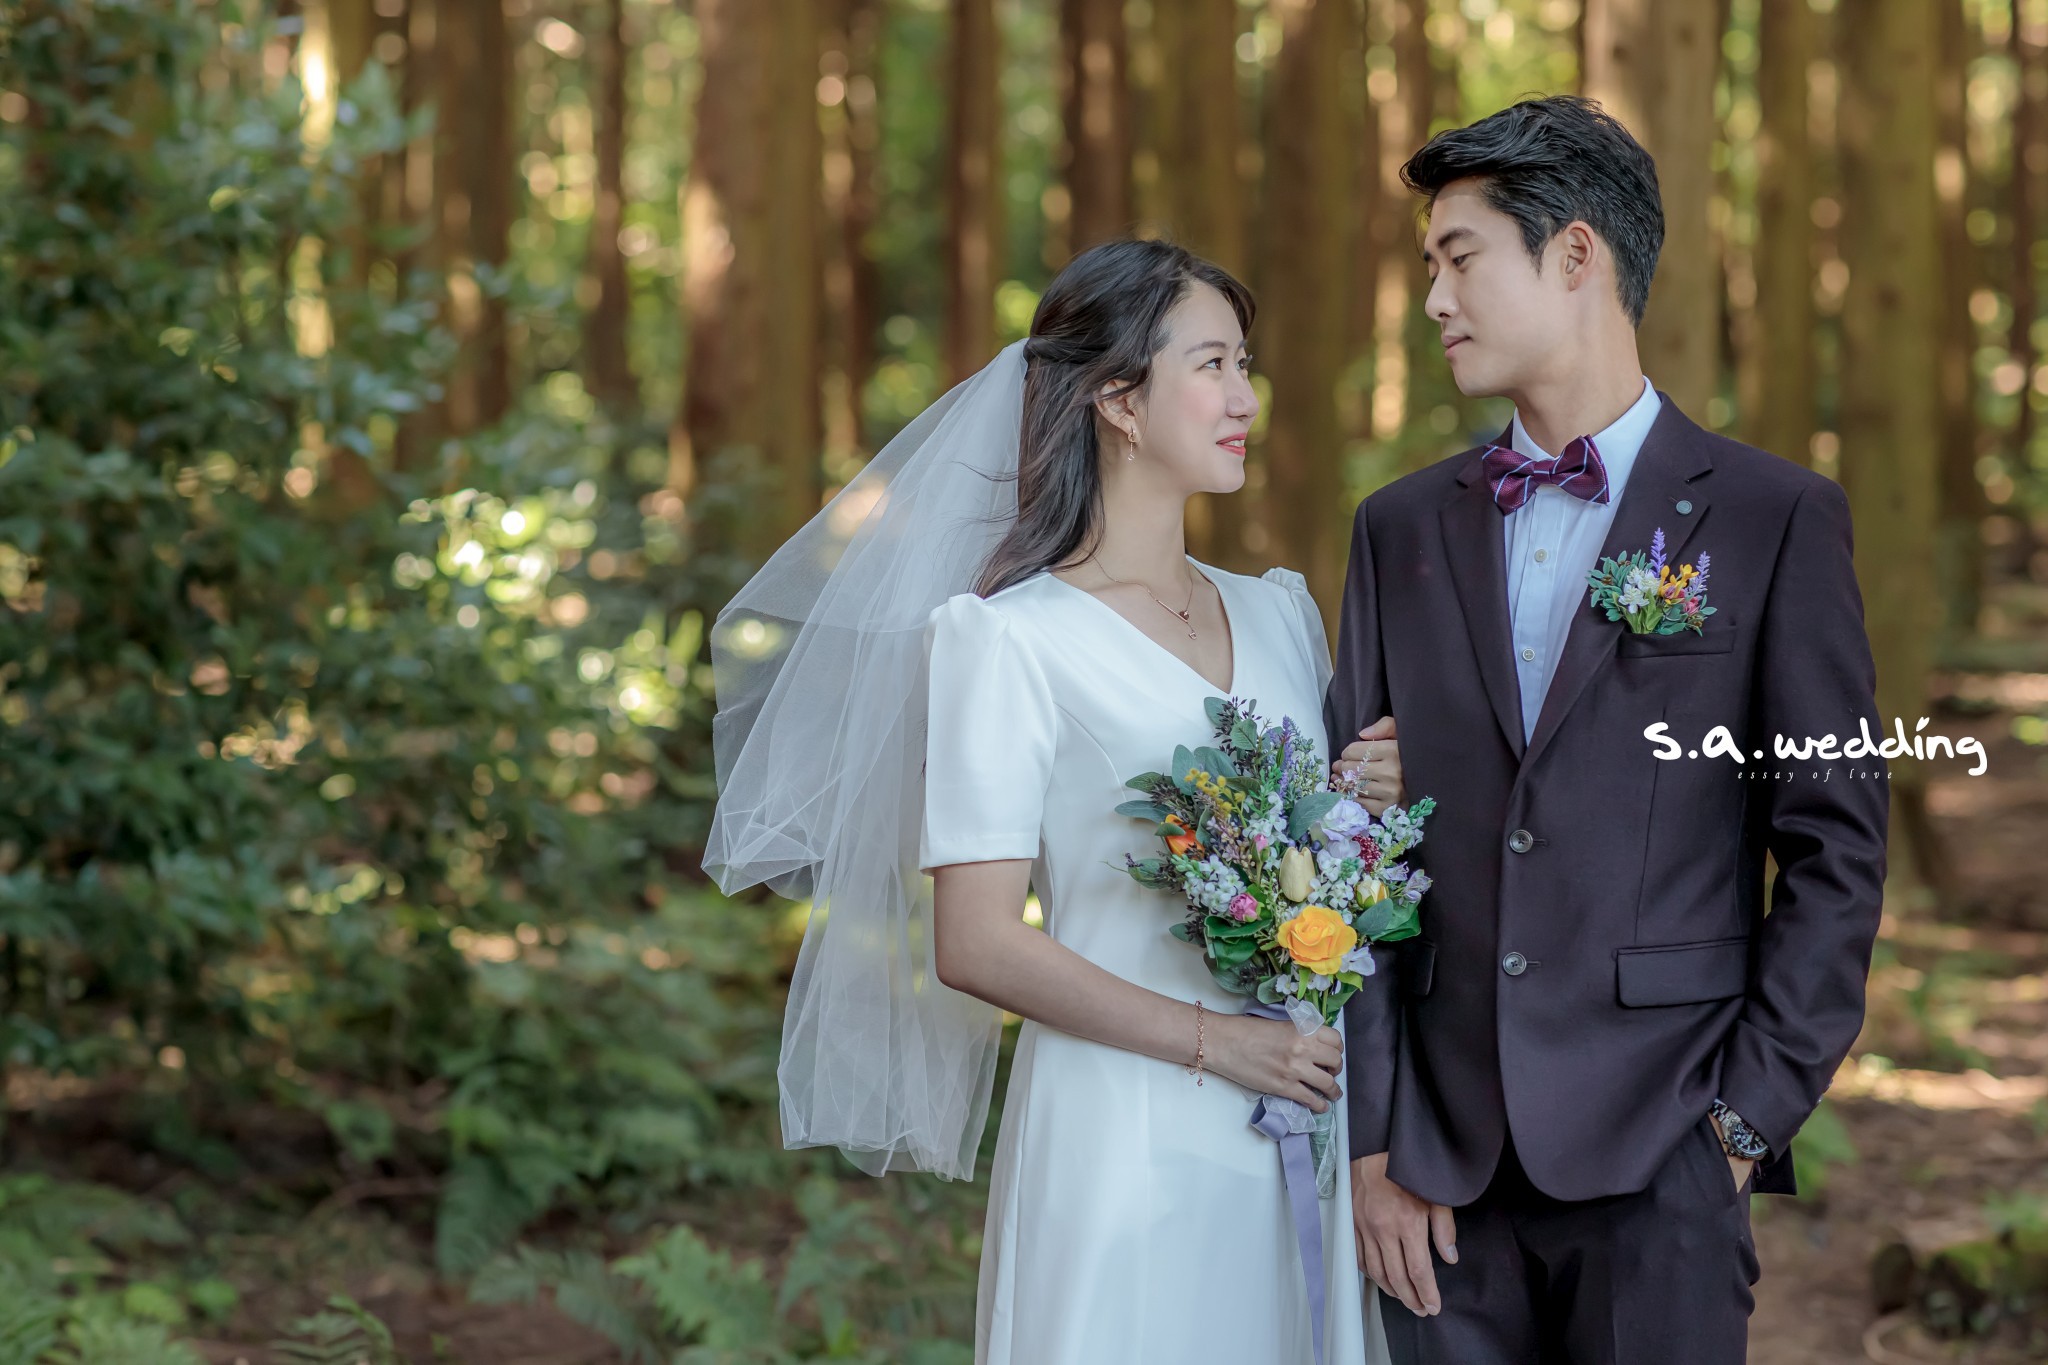 濟州婚攝 韓式婚紗攝影 s.a. wedding 韓國外景婚攝 pre-wedding